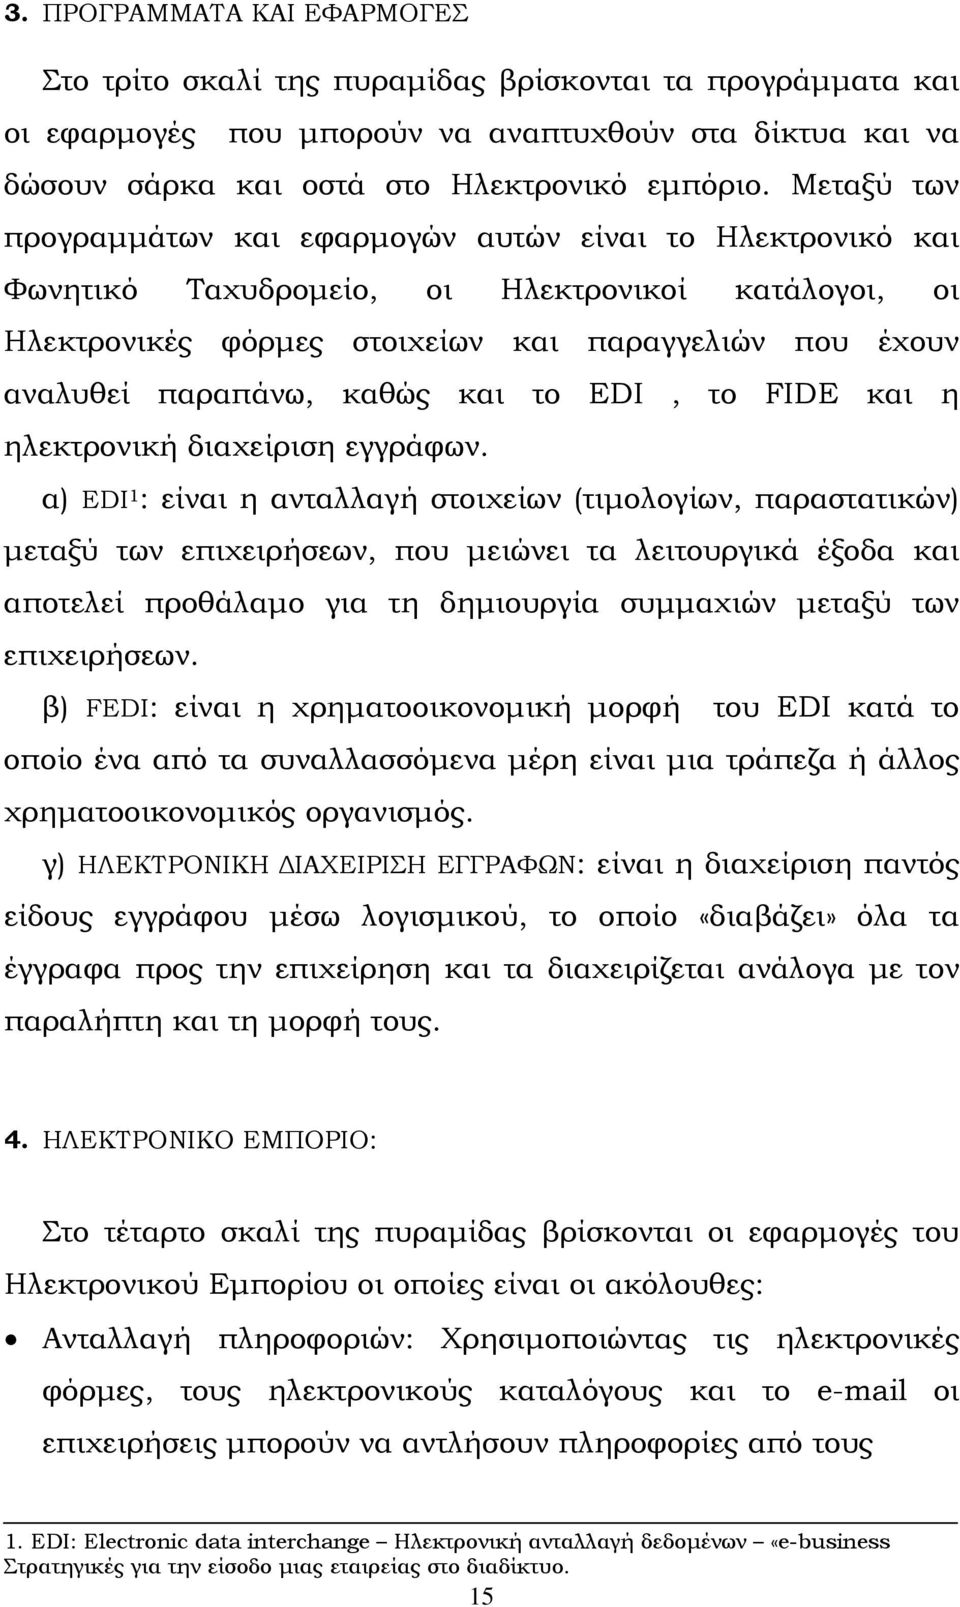 καθώς και το EDI, το FIDE και η ηλεκτρονική διαχείριση εγγράφων.